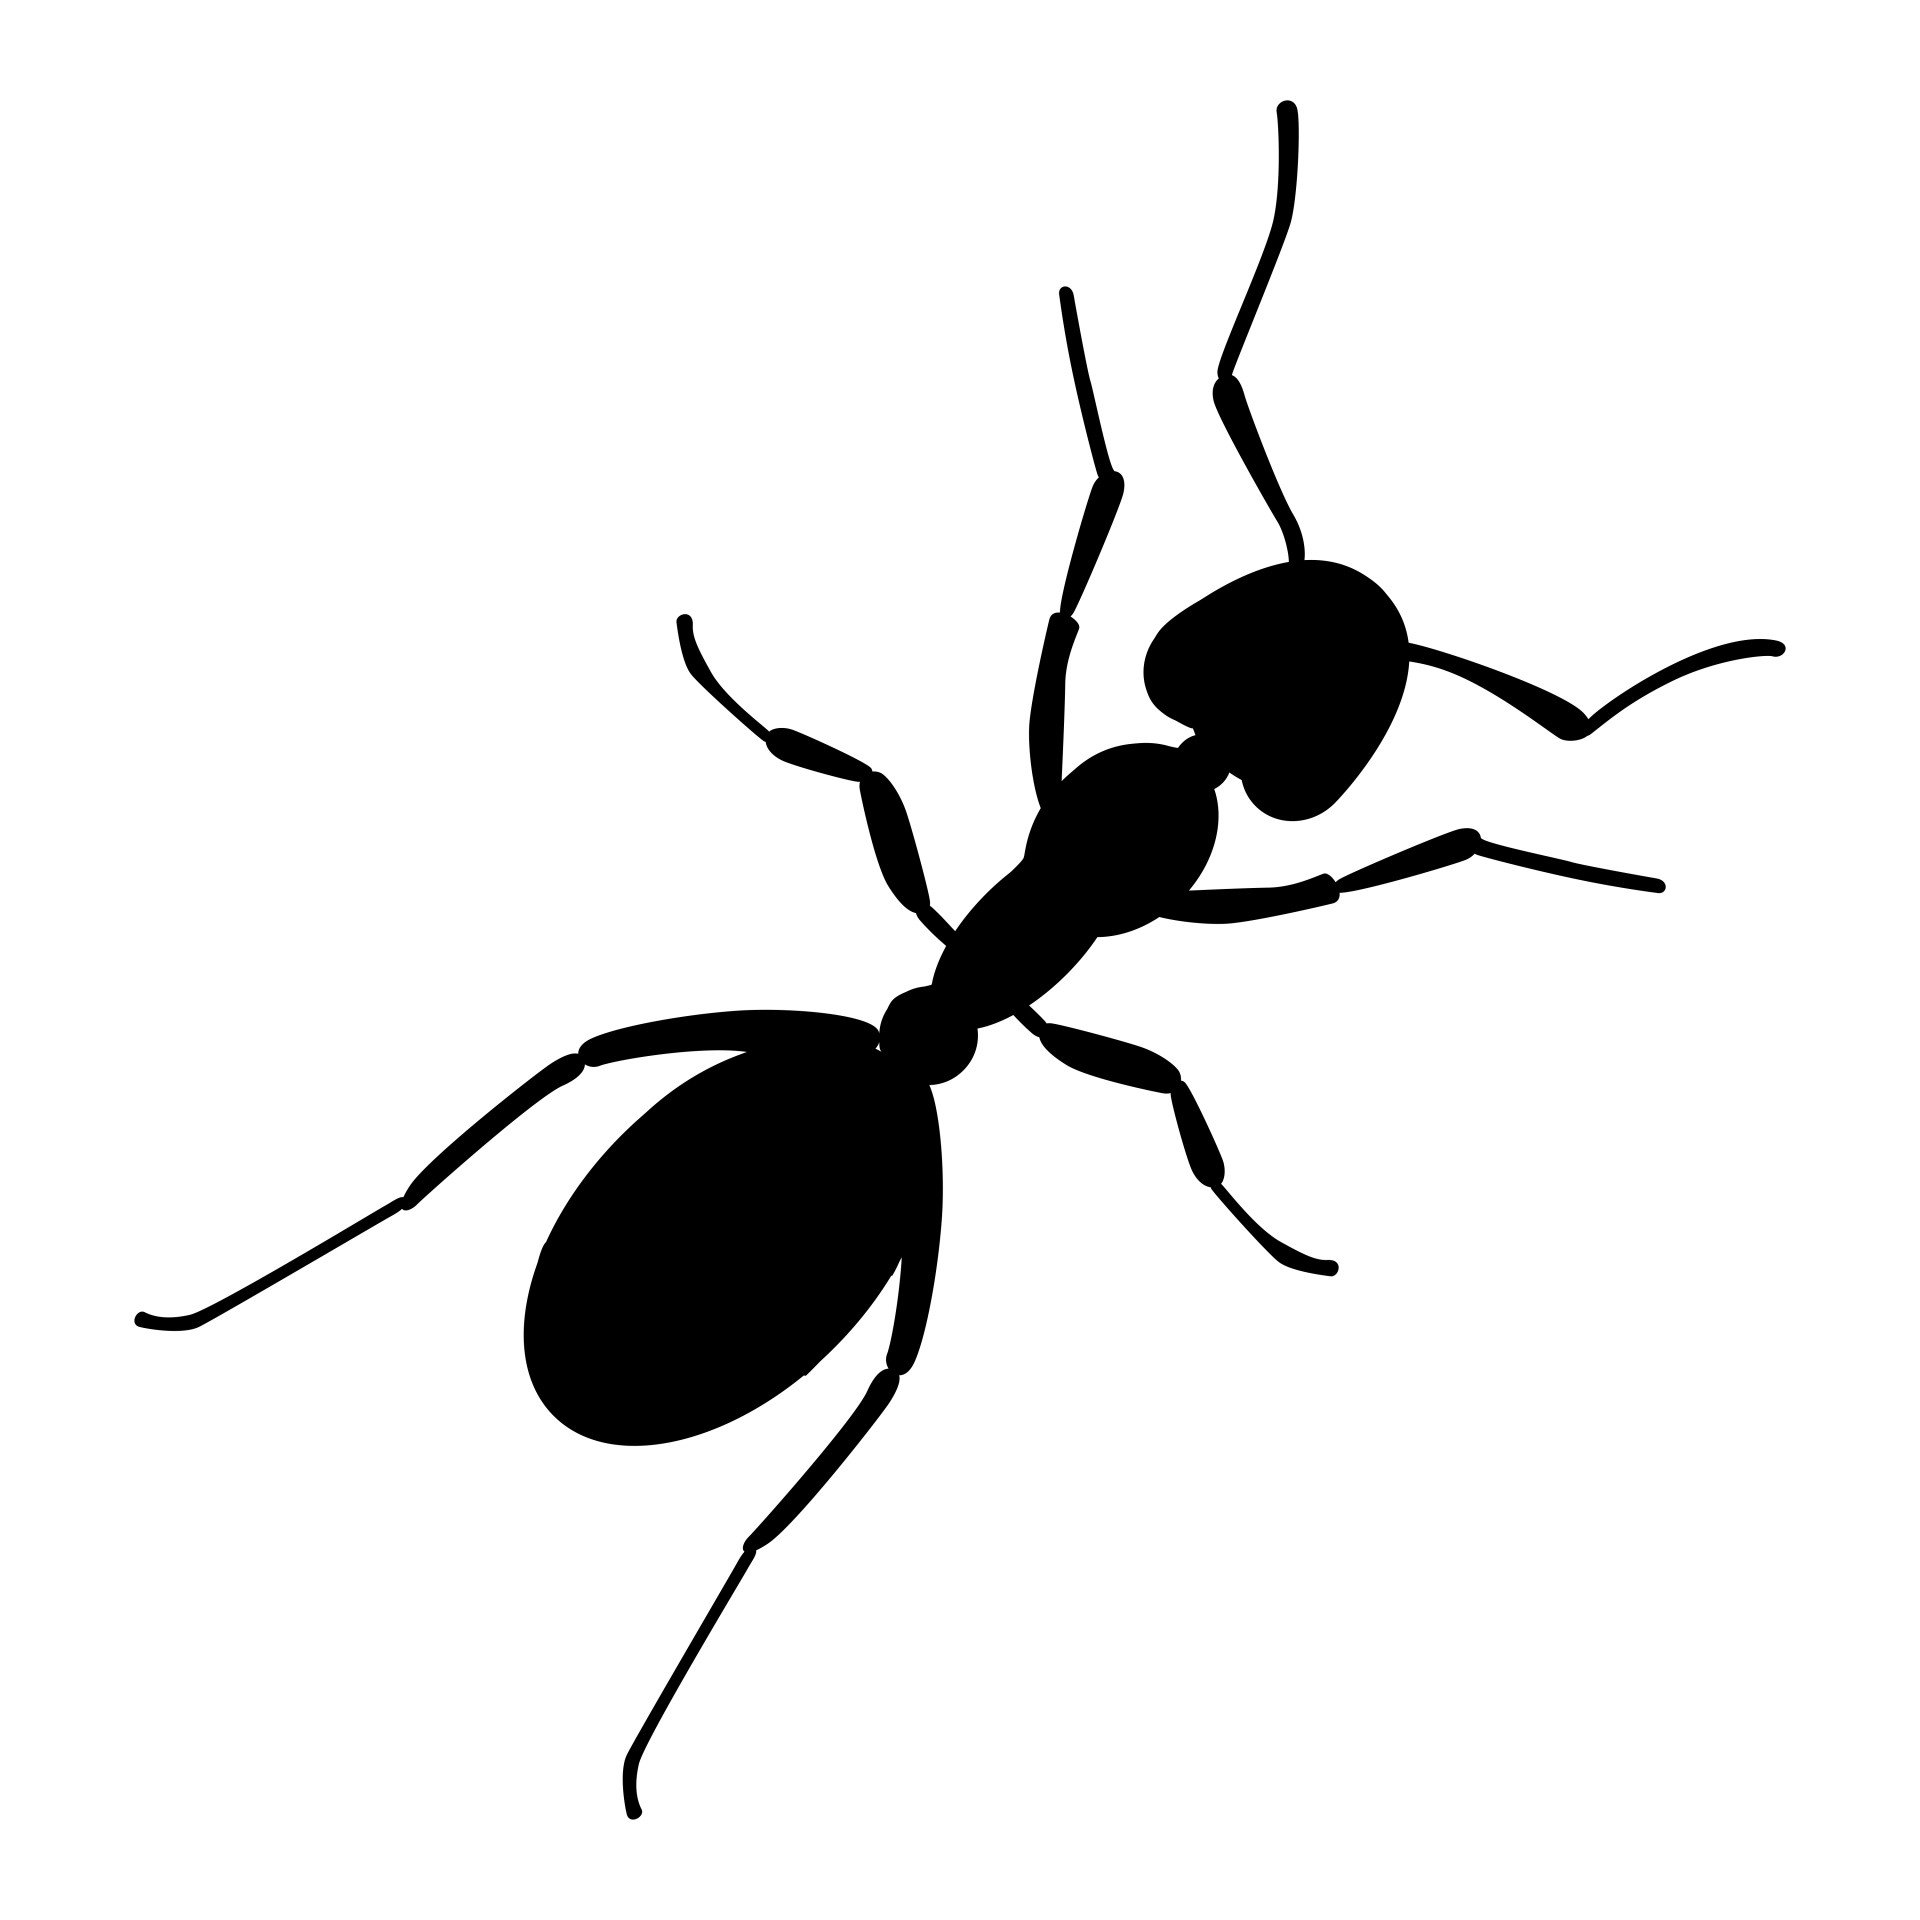 Soy una hormiga que intenta aportar su granito de arena para que el mundo sea un poco más agradable. Estoy deseando conocer los comentarios de más hormigas:)